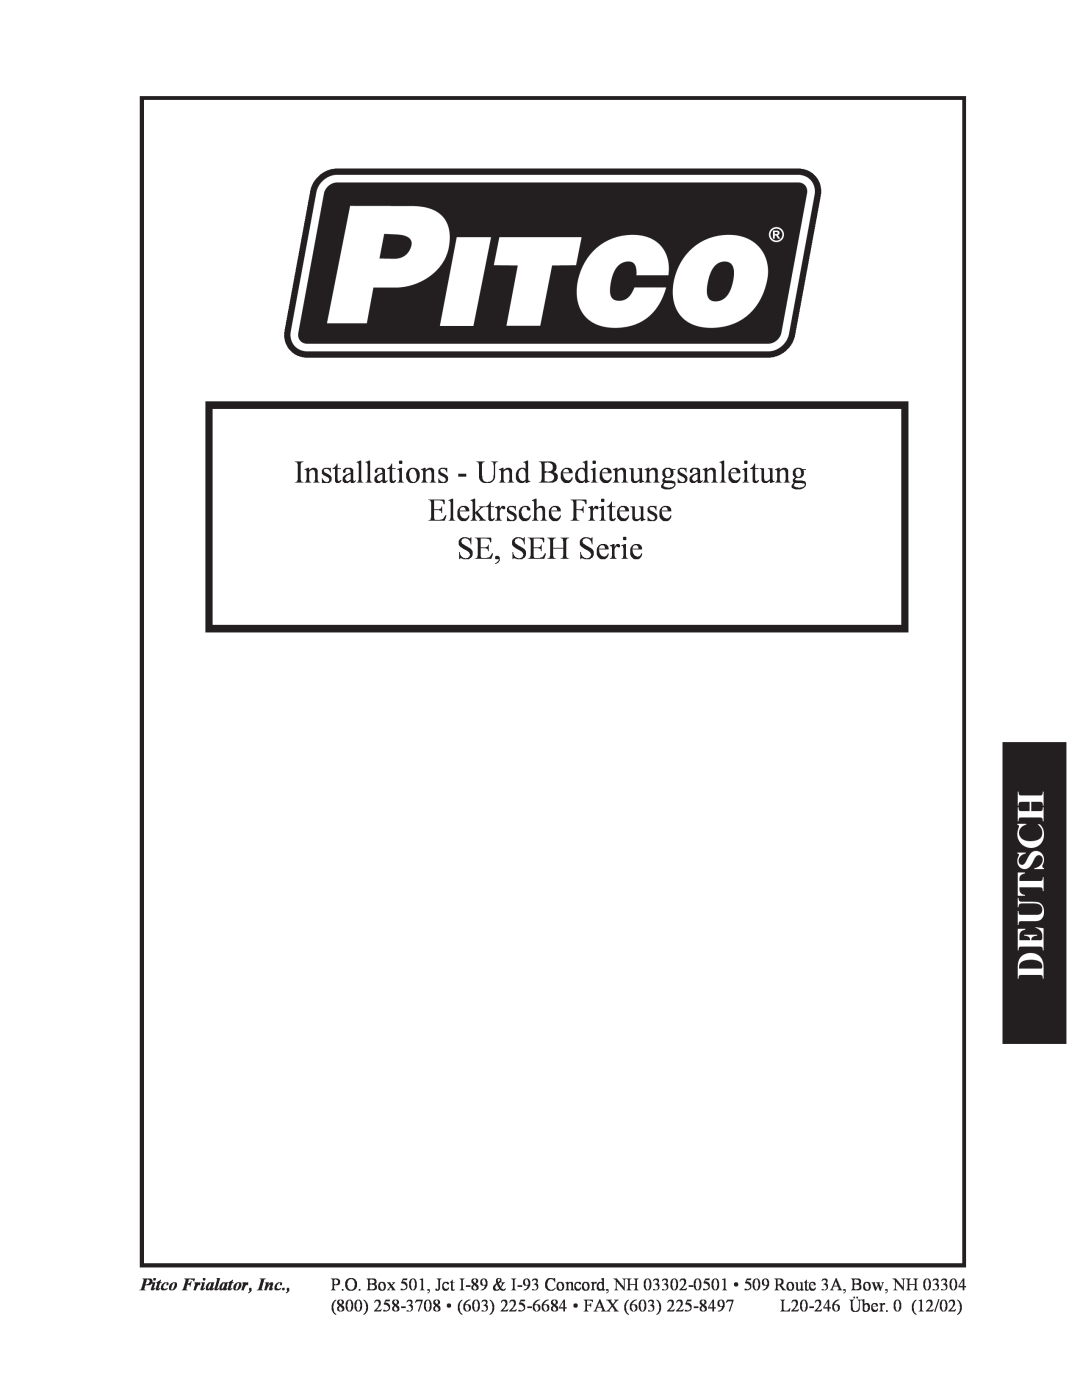 Pitco Frialator Electric Fryer Deutsch, Installations - Und Bedienungsanleitung, Elektrsche Friteuse, SE, SEH Serie 